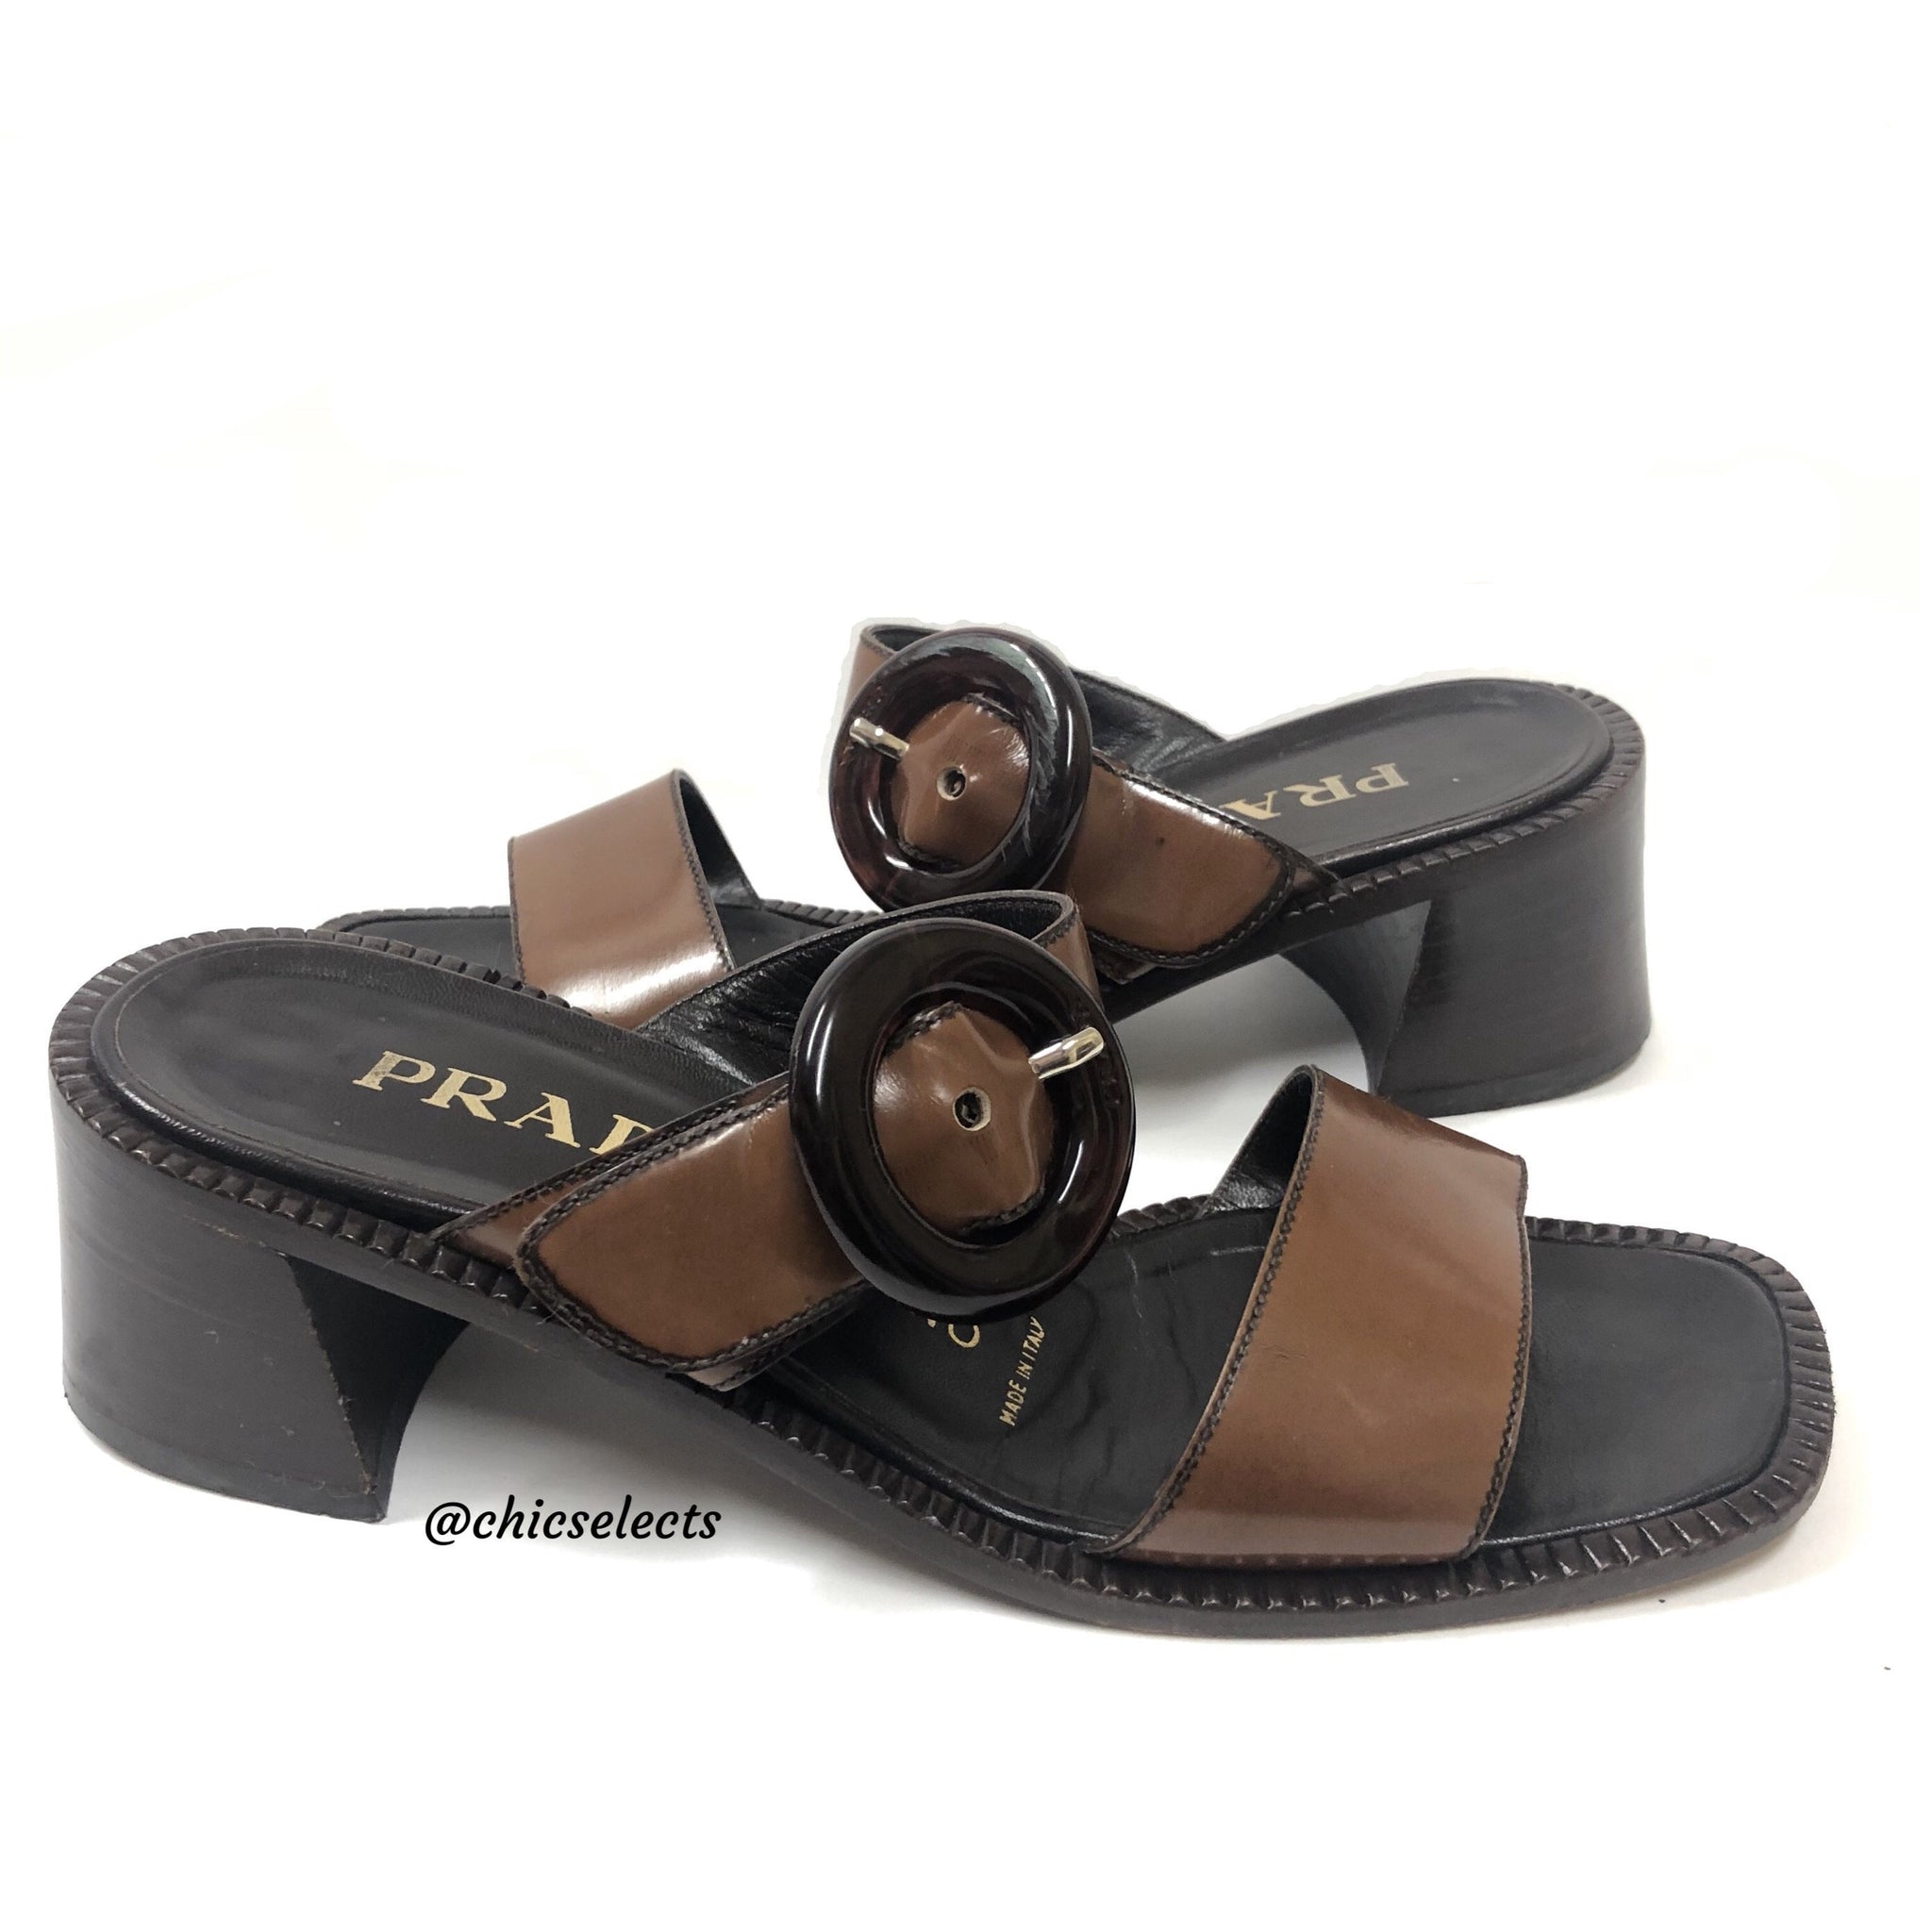 prada beach sandals